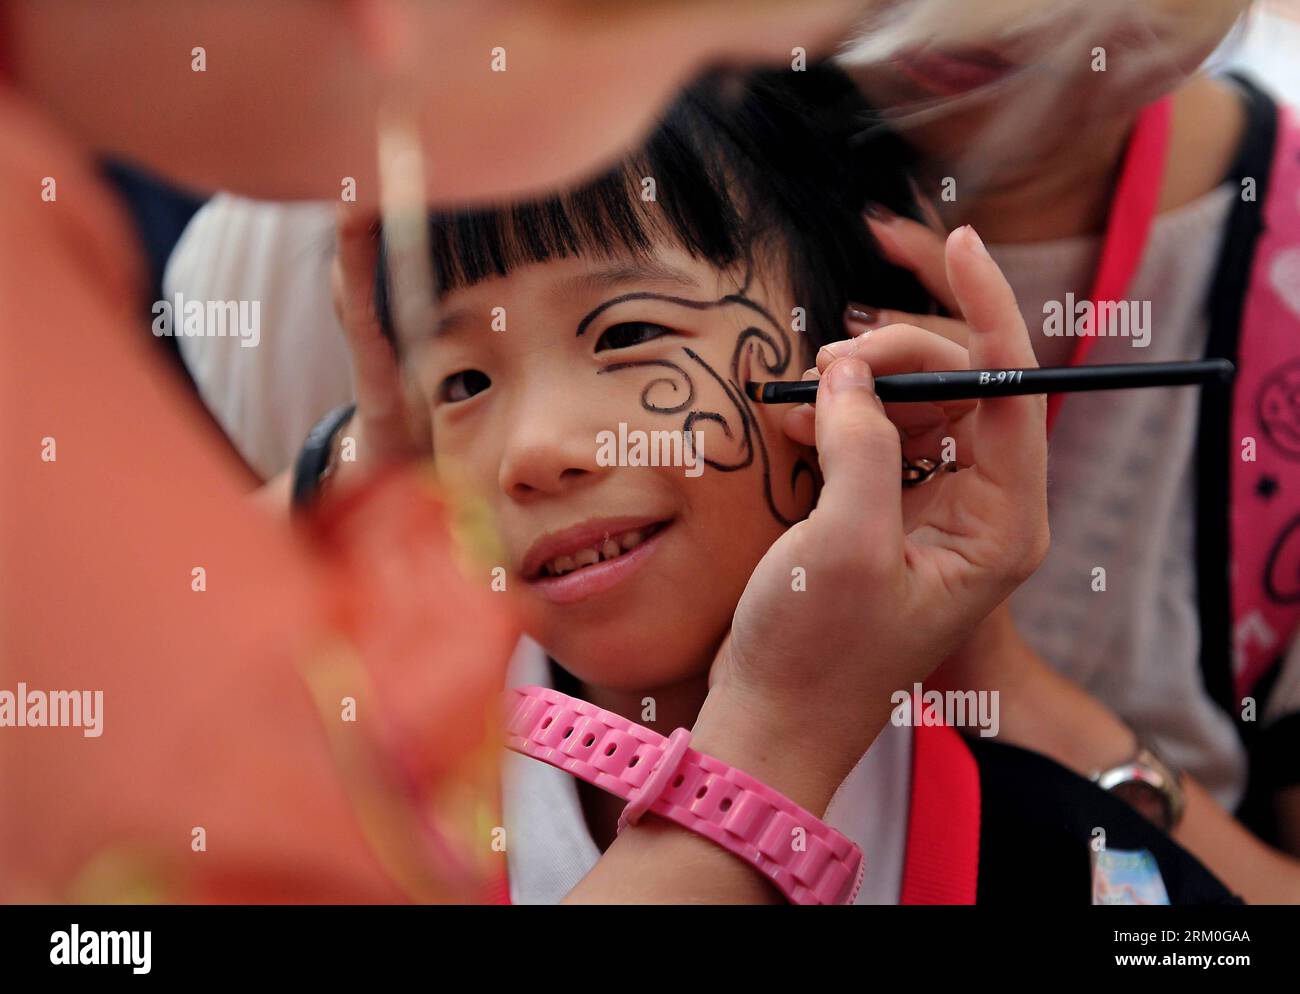 Bildnummer: 59414905 Datum: 23.03.2013 Copyright: Imago/Xinhua (130323) -- HONG KONG, 23 de marzo de 2013 (Xinhua) -- Un voluntario dibuja en la cara de un niño durante el evento de caridad Misión Posible en Hong Kong, 23 de marzo de 2013. Mission Possible , una iniciativa benéfica lanzada por la Fundación Peter Bennett y la Unión de Fútbol de Rugby de Hong Kong, ha recibido un amplio apoyo de las estrellas, corporaciones y grupos sociales de Rugby 7º, etc. Todas las ganancias se destinarán directamente a apoyar a cuatro organizaciones benéficas de Hong Kong. (Xinhua/Chen Xiaowei) CHINA-HONG KONG-RUGBY-MISIÓN POSIBLE-CARIDAD PUBLICATIONxNOTxINxCHN Gesellschaft Foto de stock